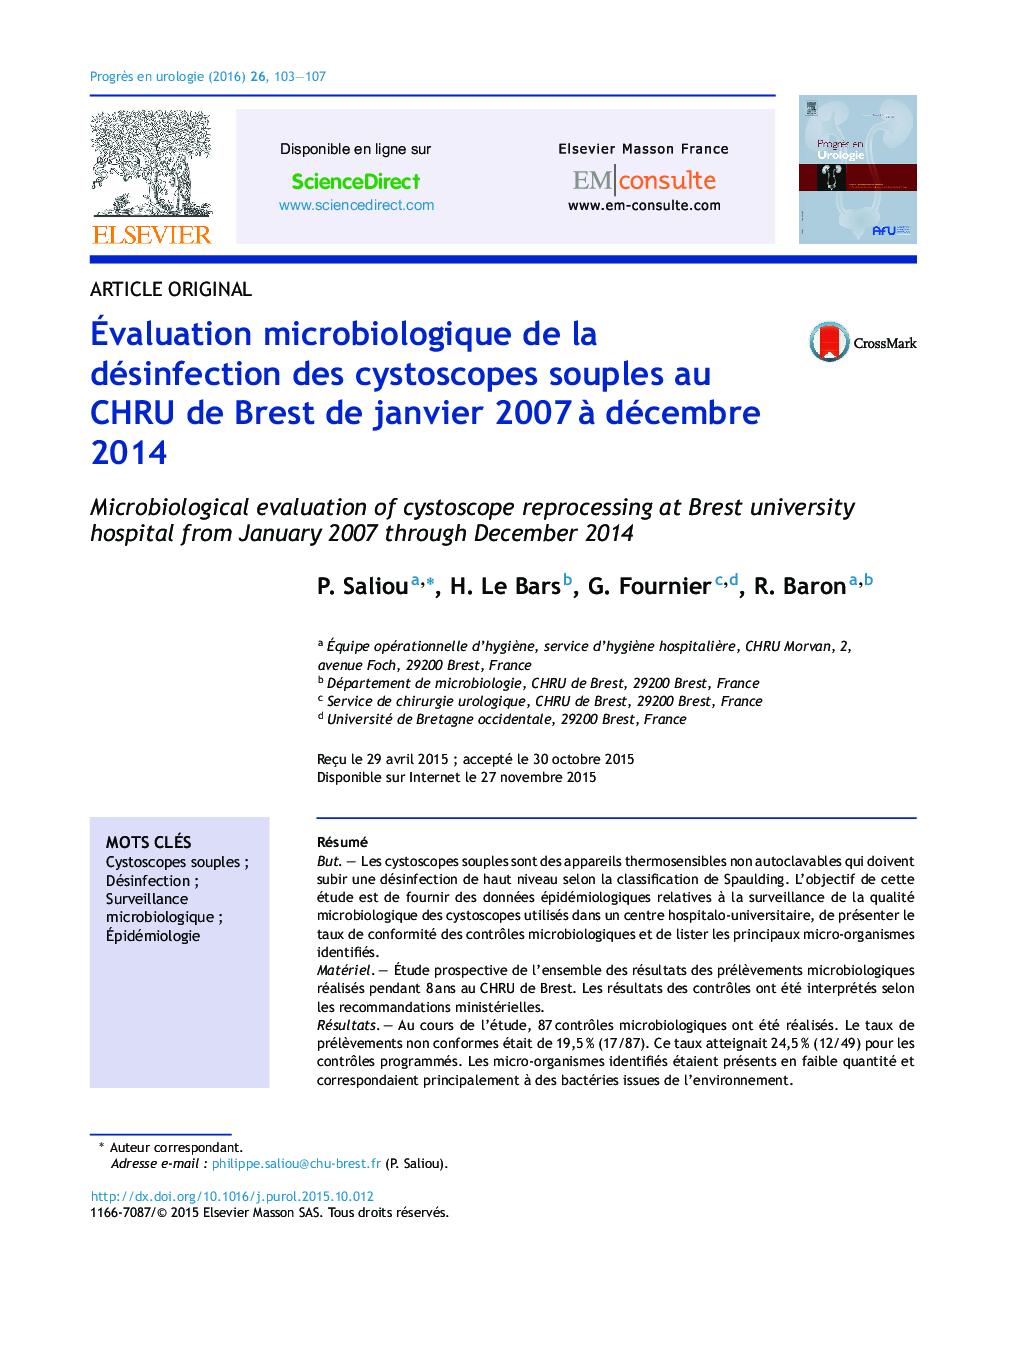 Évaluation microbiologique de la désinfection des cystoscopes souples au CHRU de Brest de janvier 2007 à décembre 2014